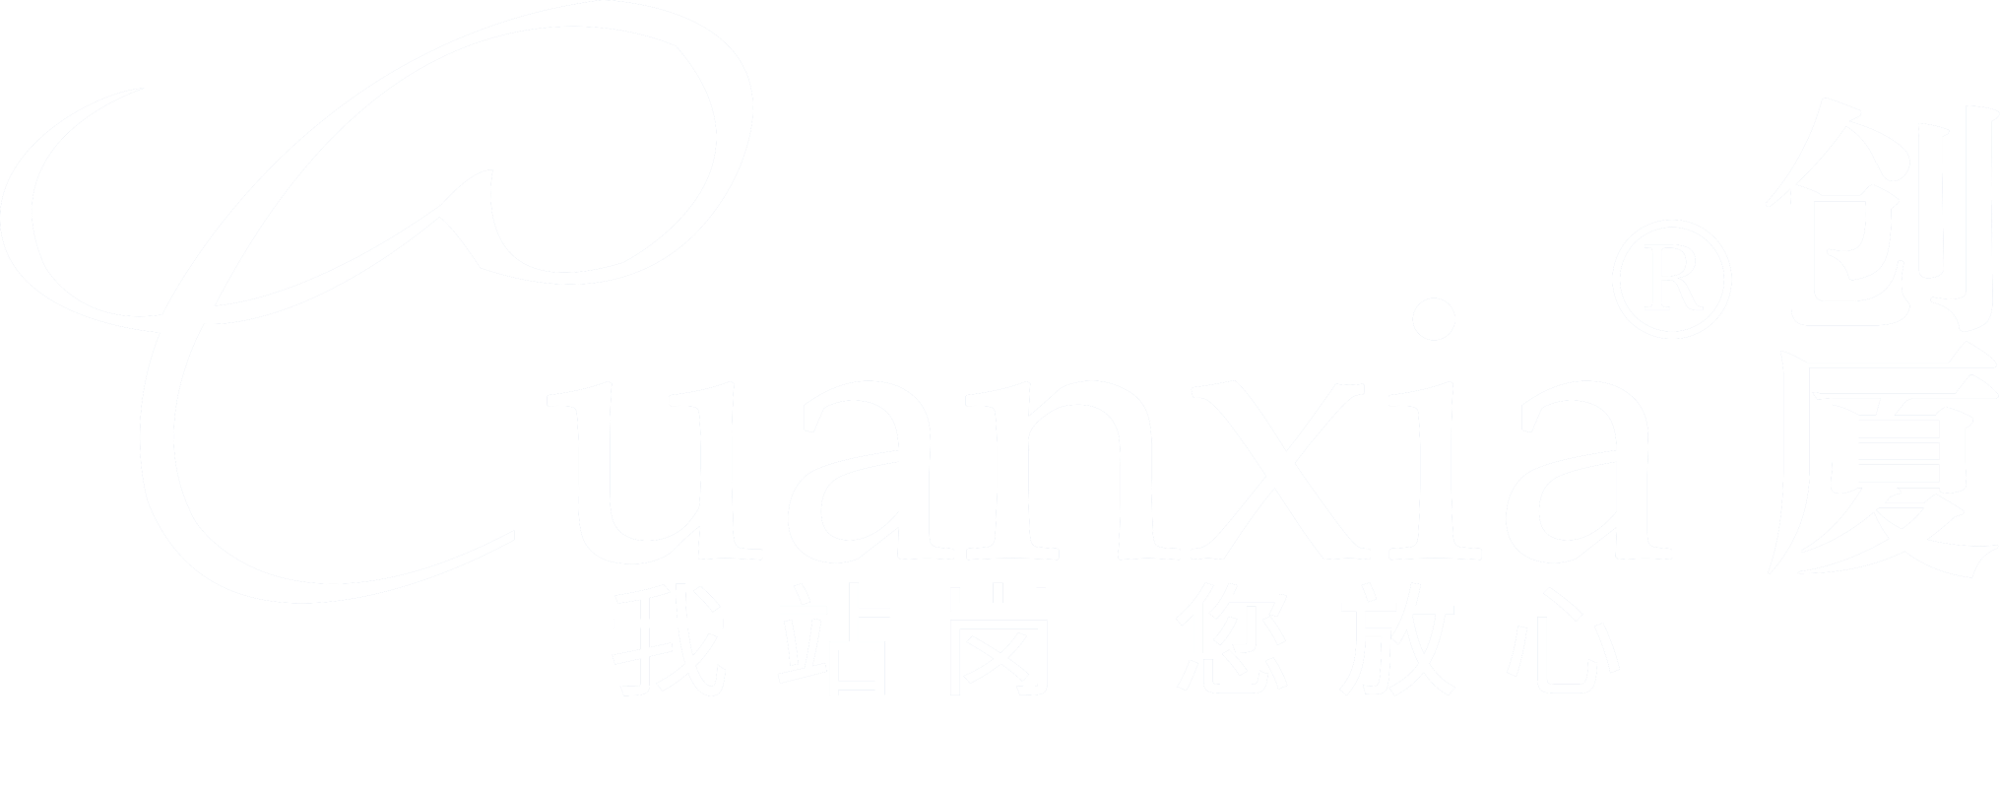 chuangxia科技